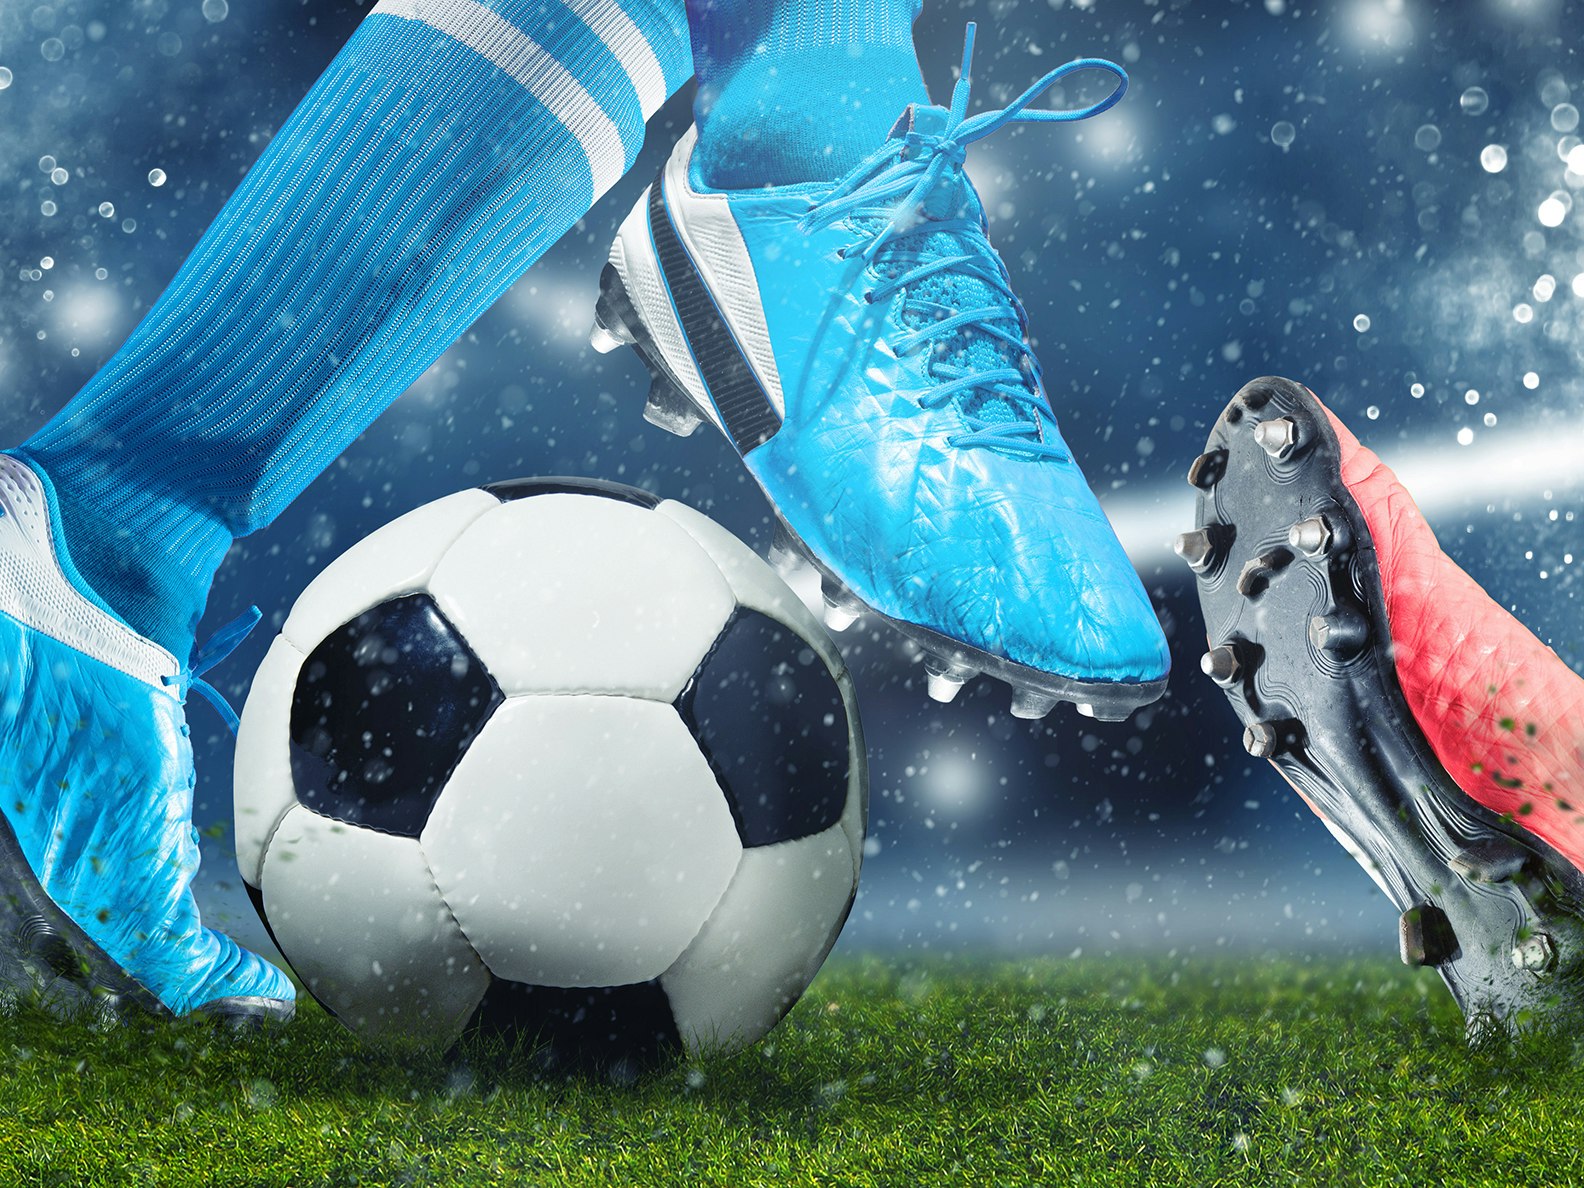 Illustrasjon av to fotballspillere. Takling, der spiller med blå sko blir taklet av spiller med røde sko.